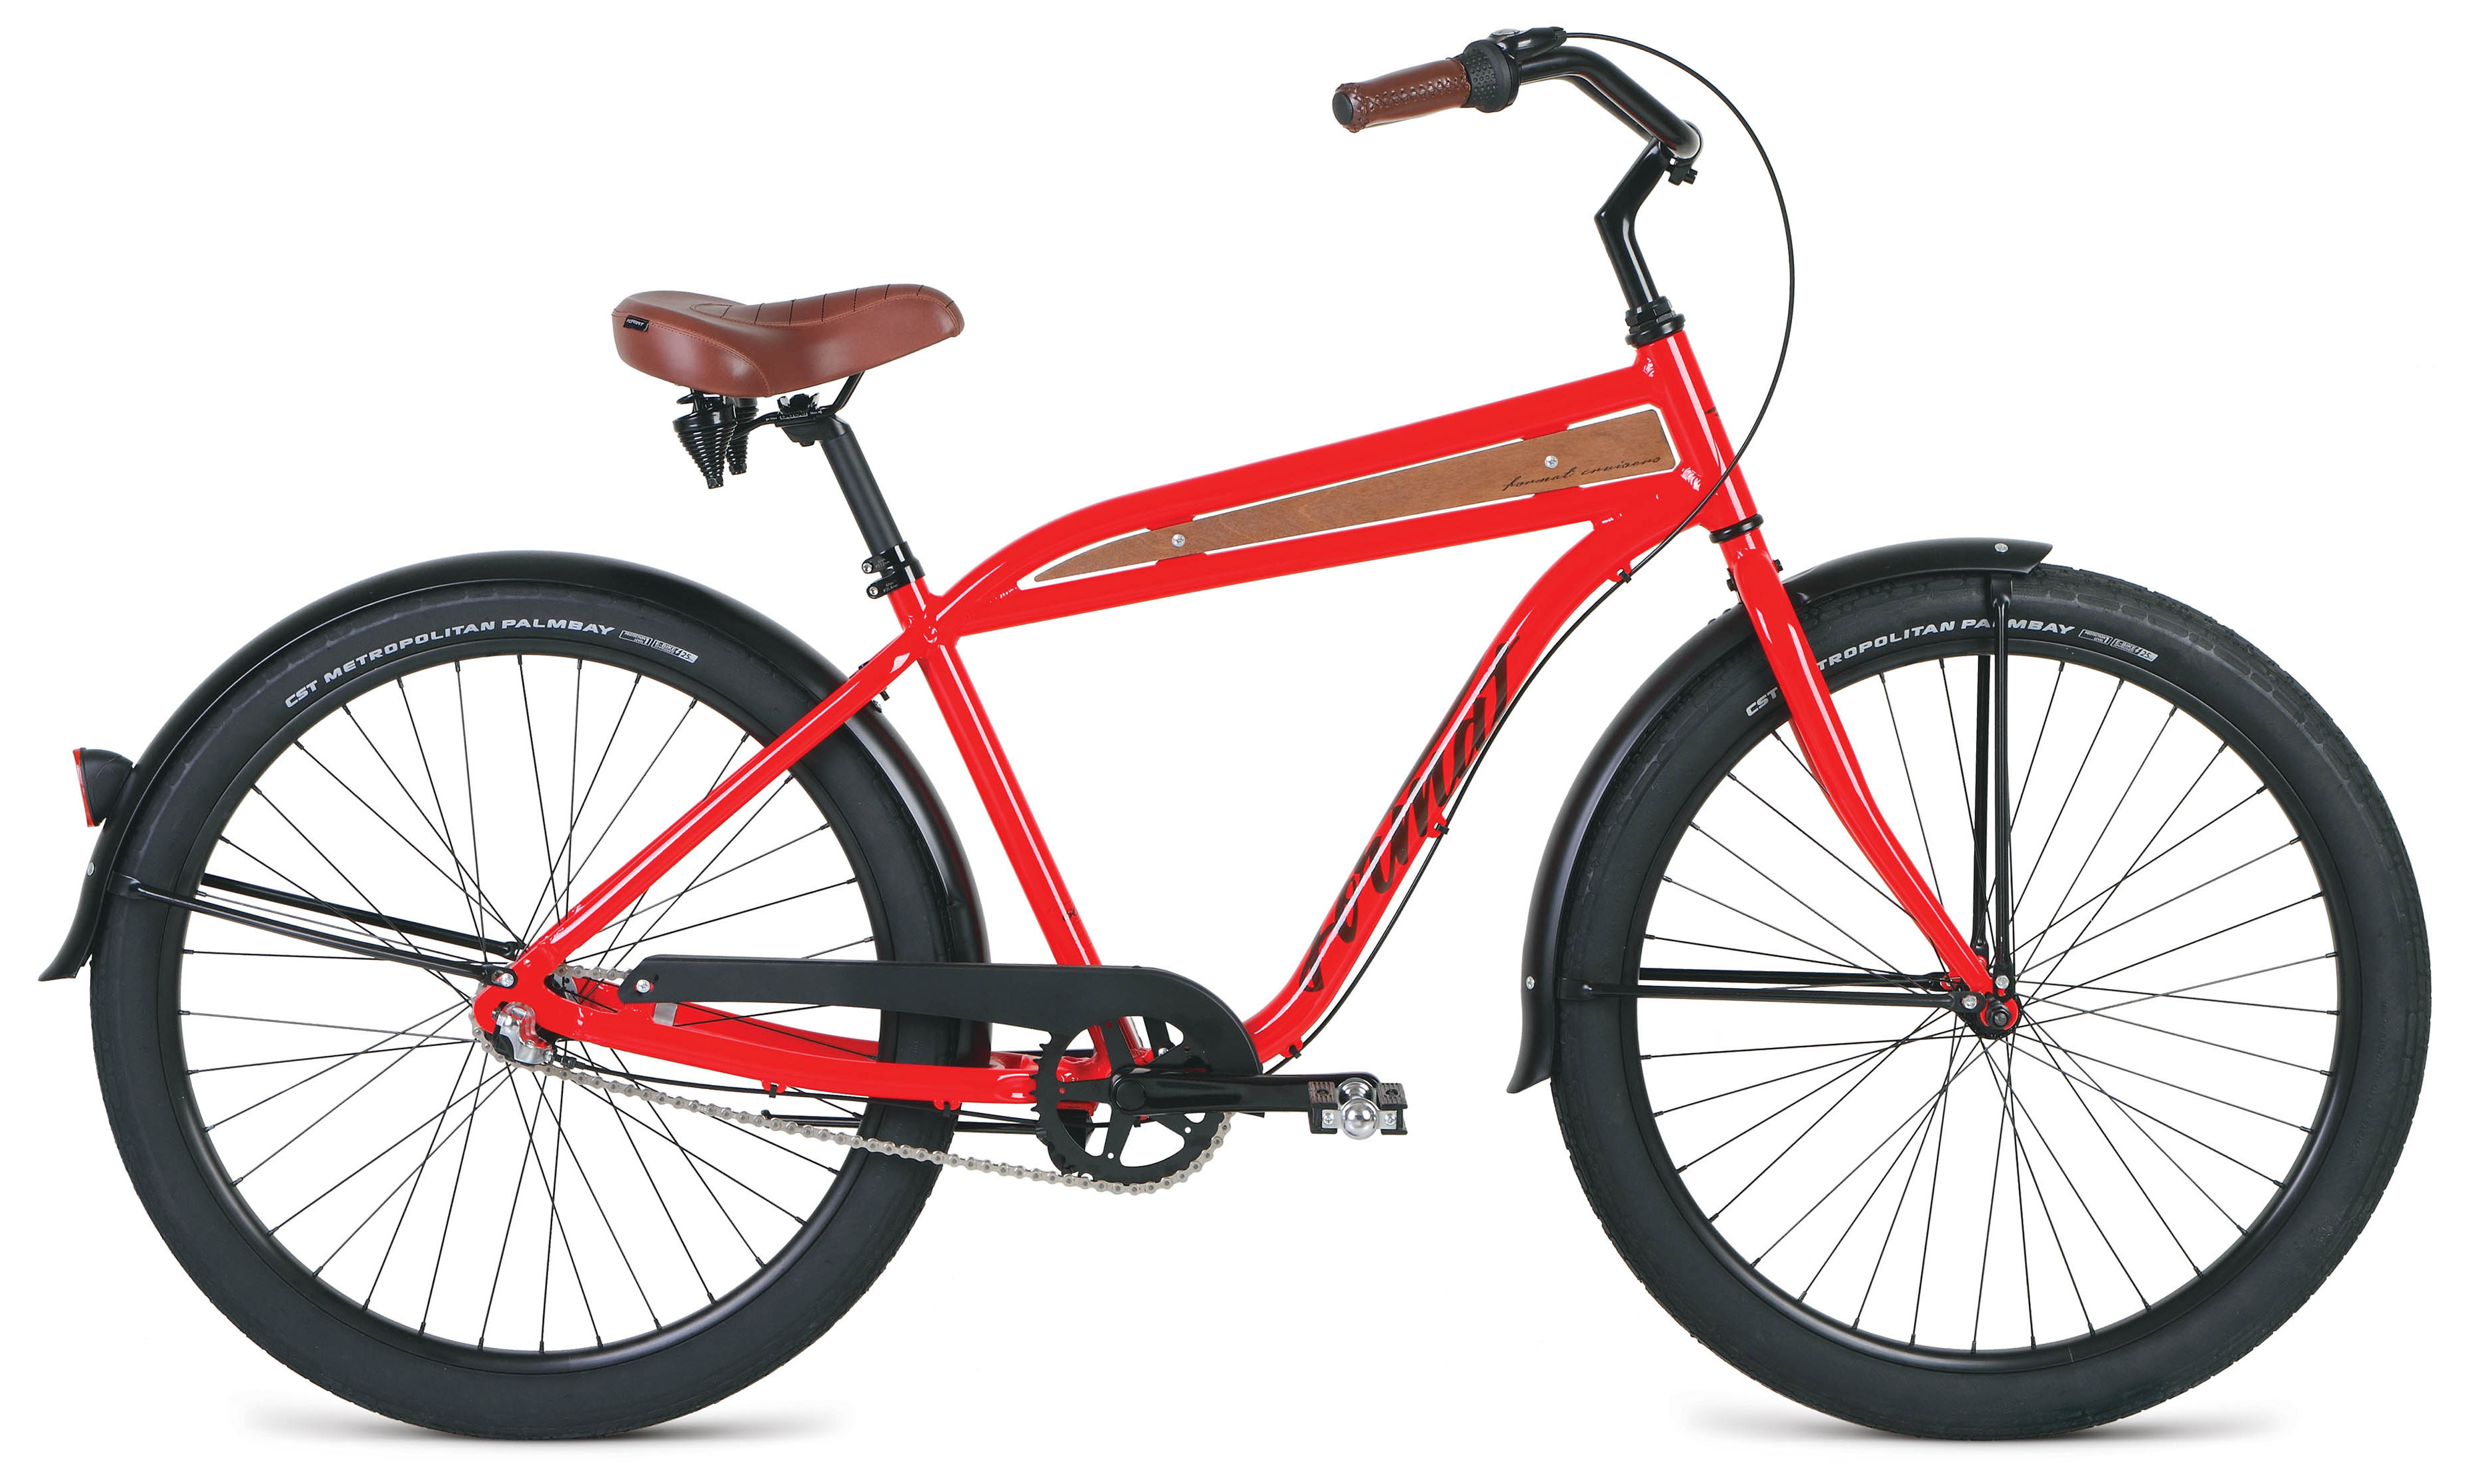  Отзывы о Городском велосипеде Format 5512 26 2019